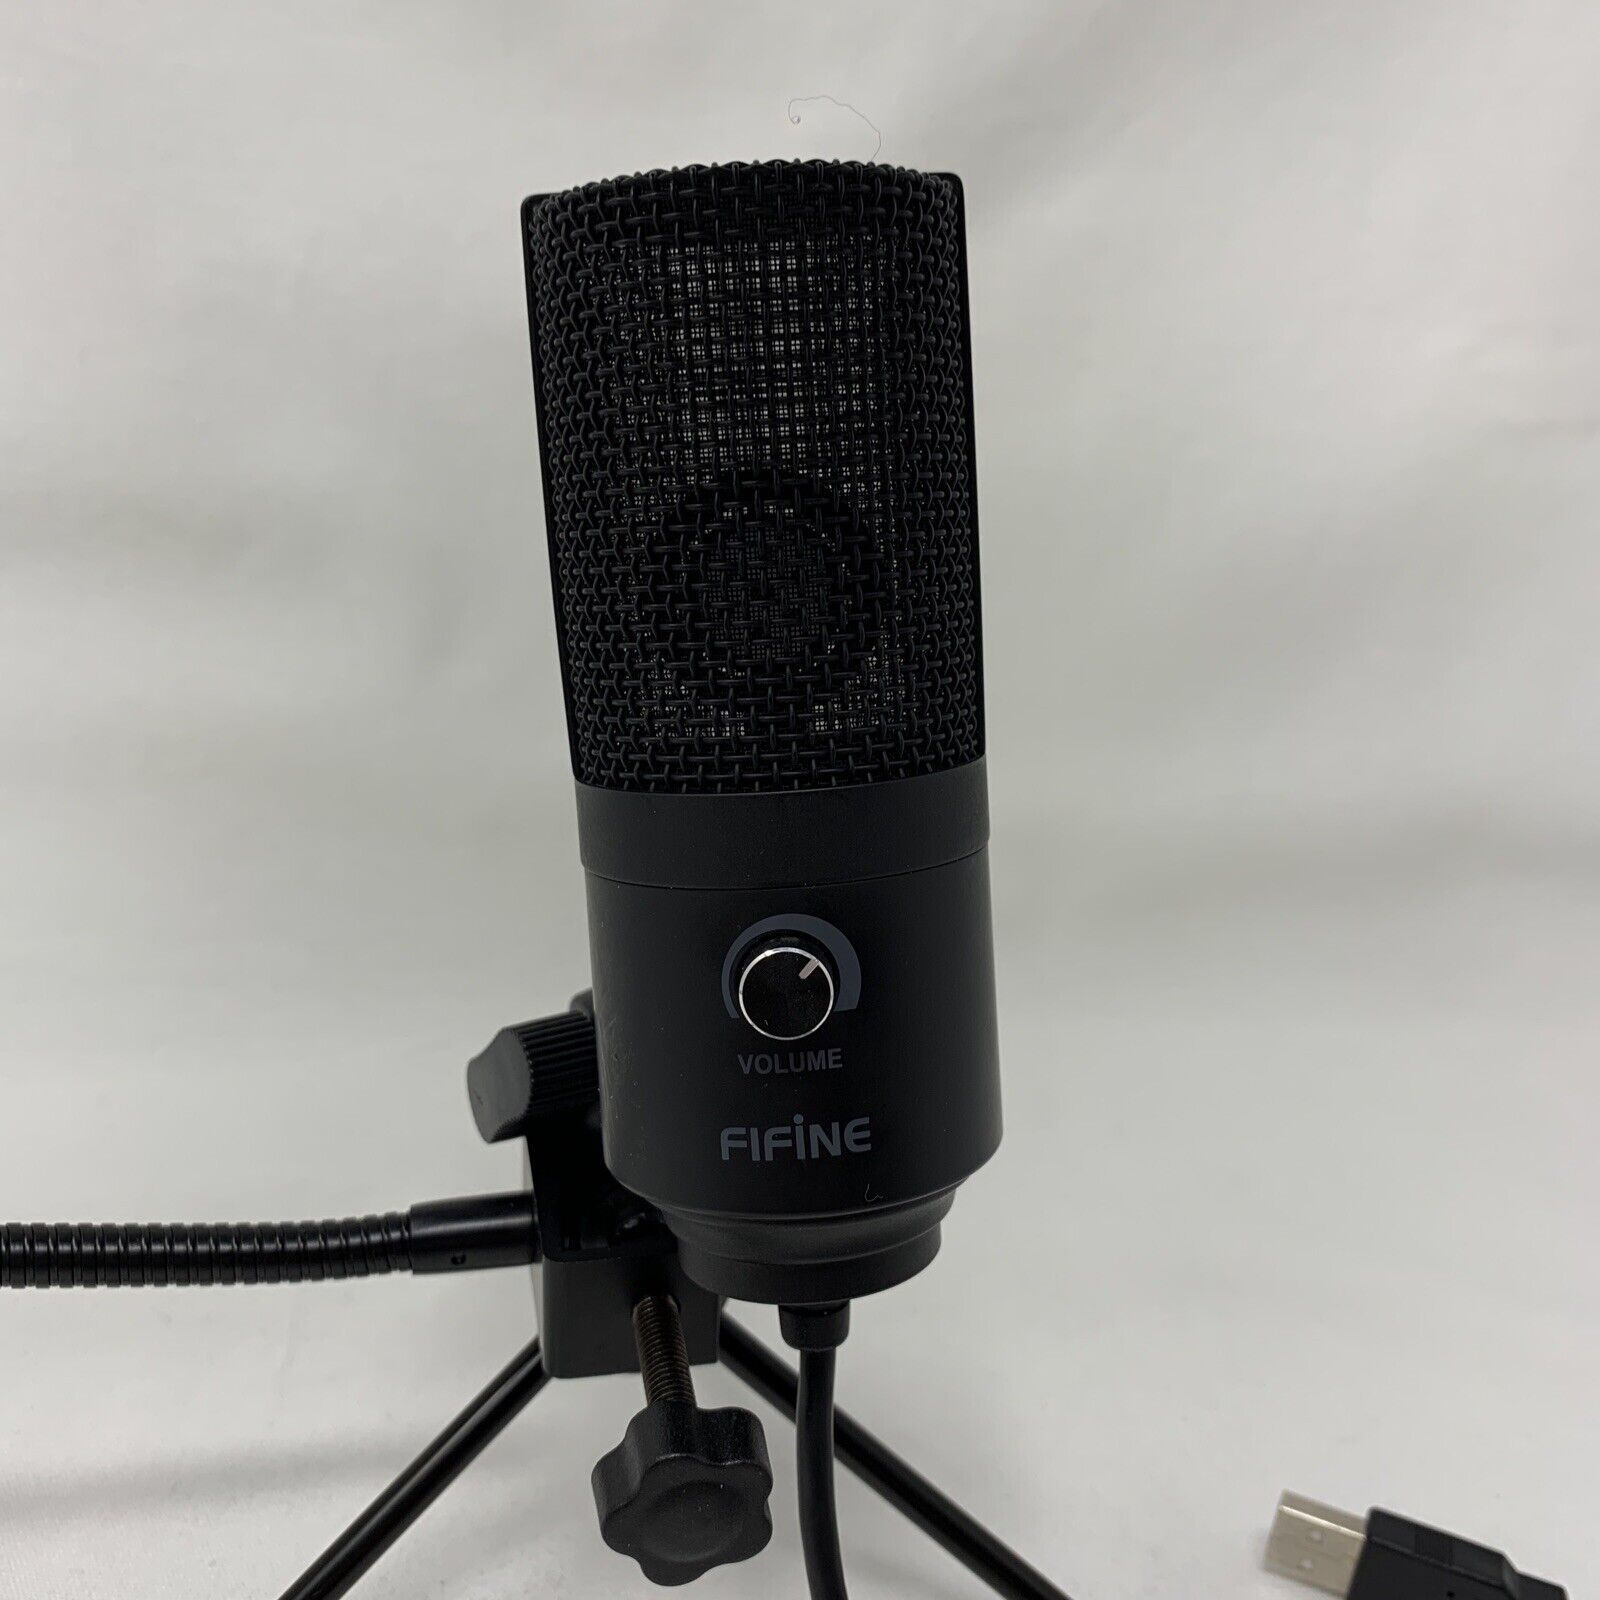 FIFINE - USB Condenser Microphone & Tri-pod Stand